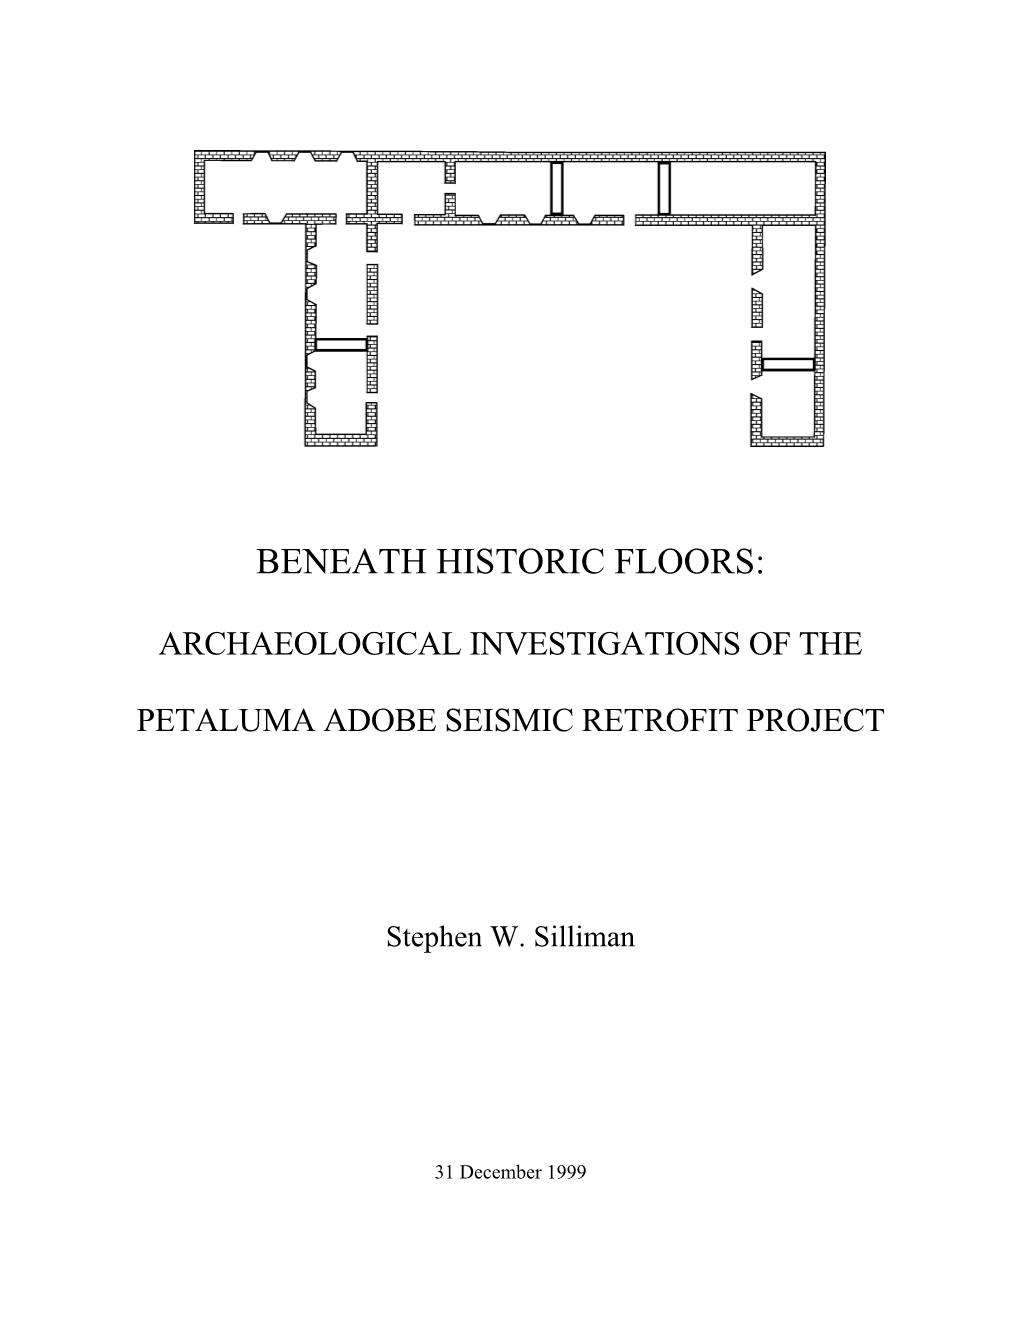 Beneath Historic Floors